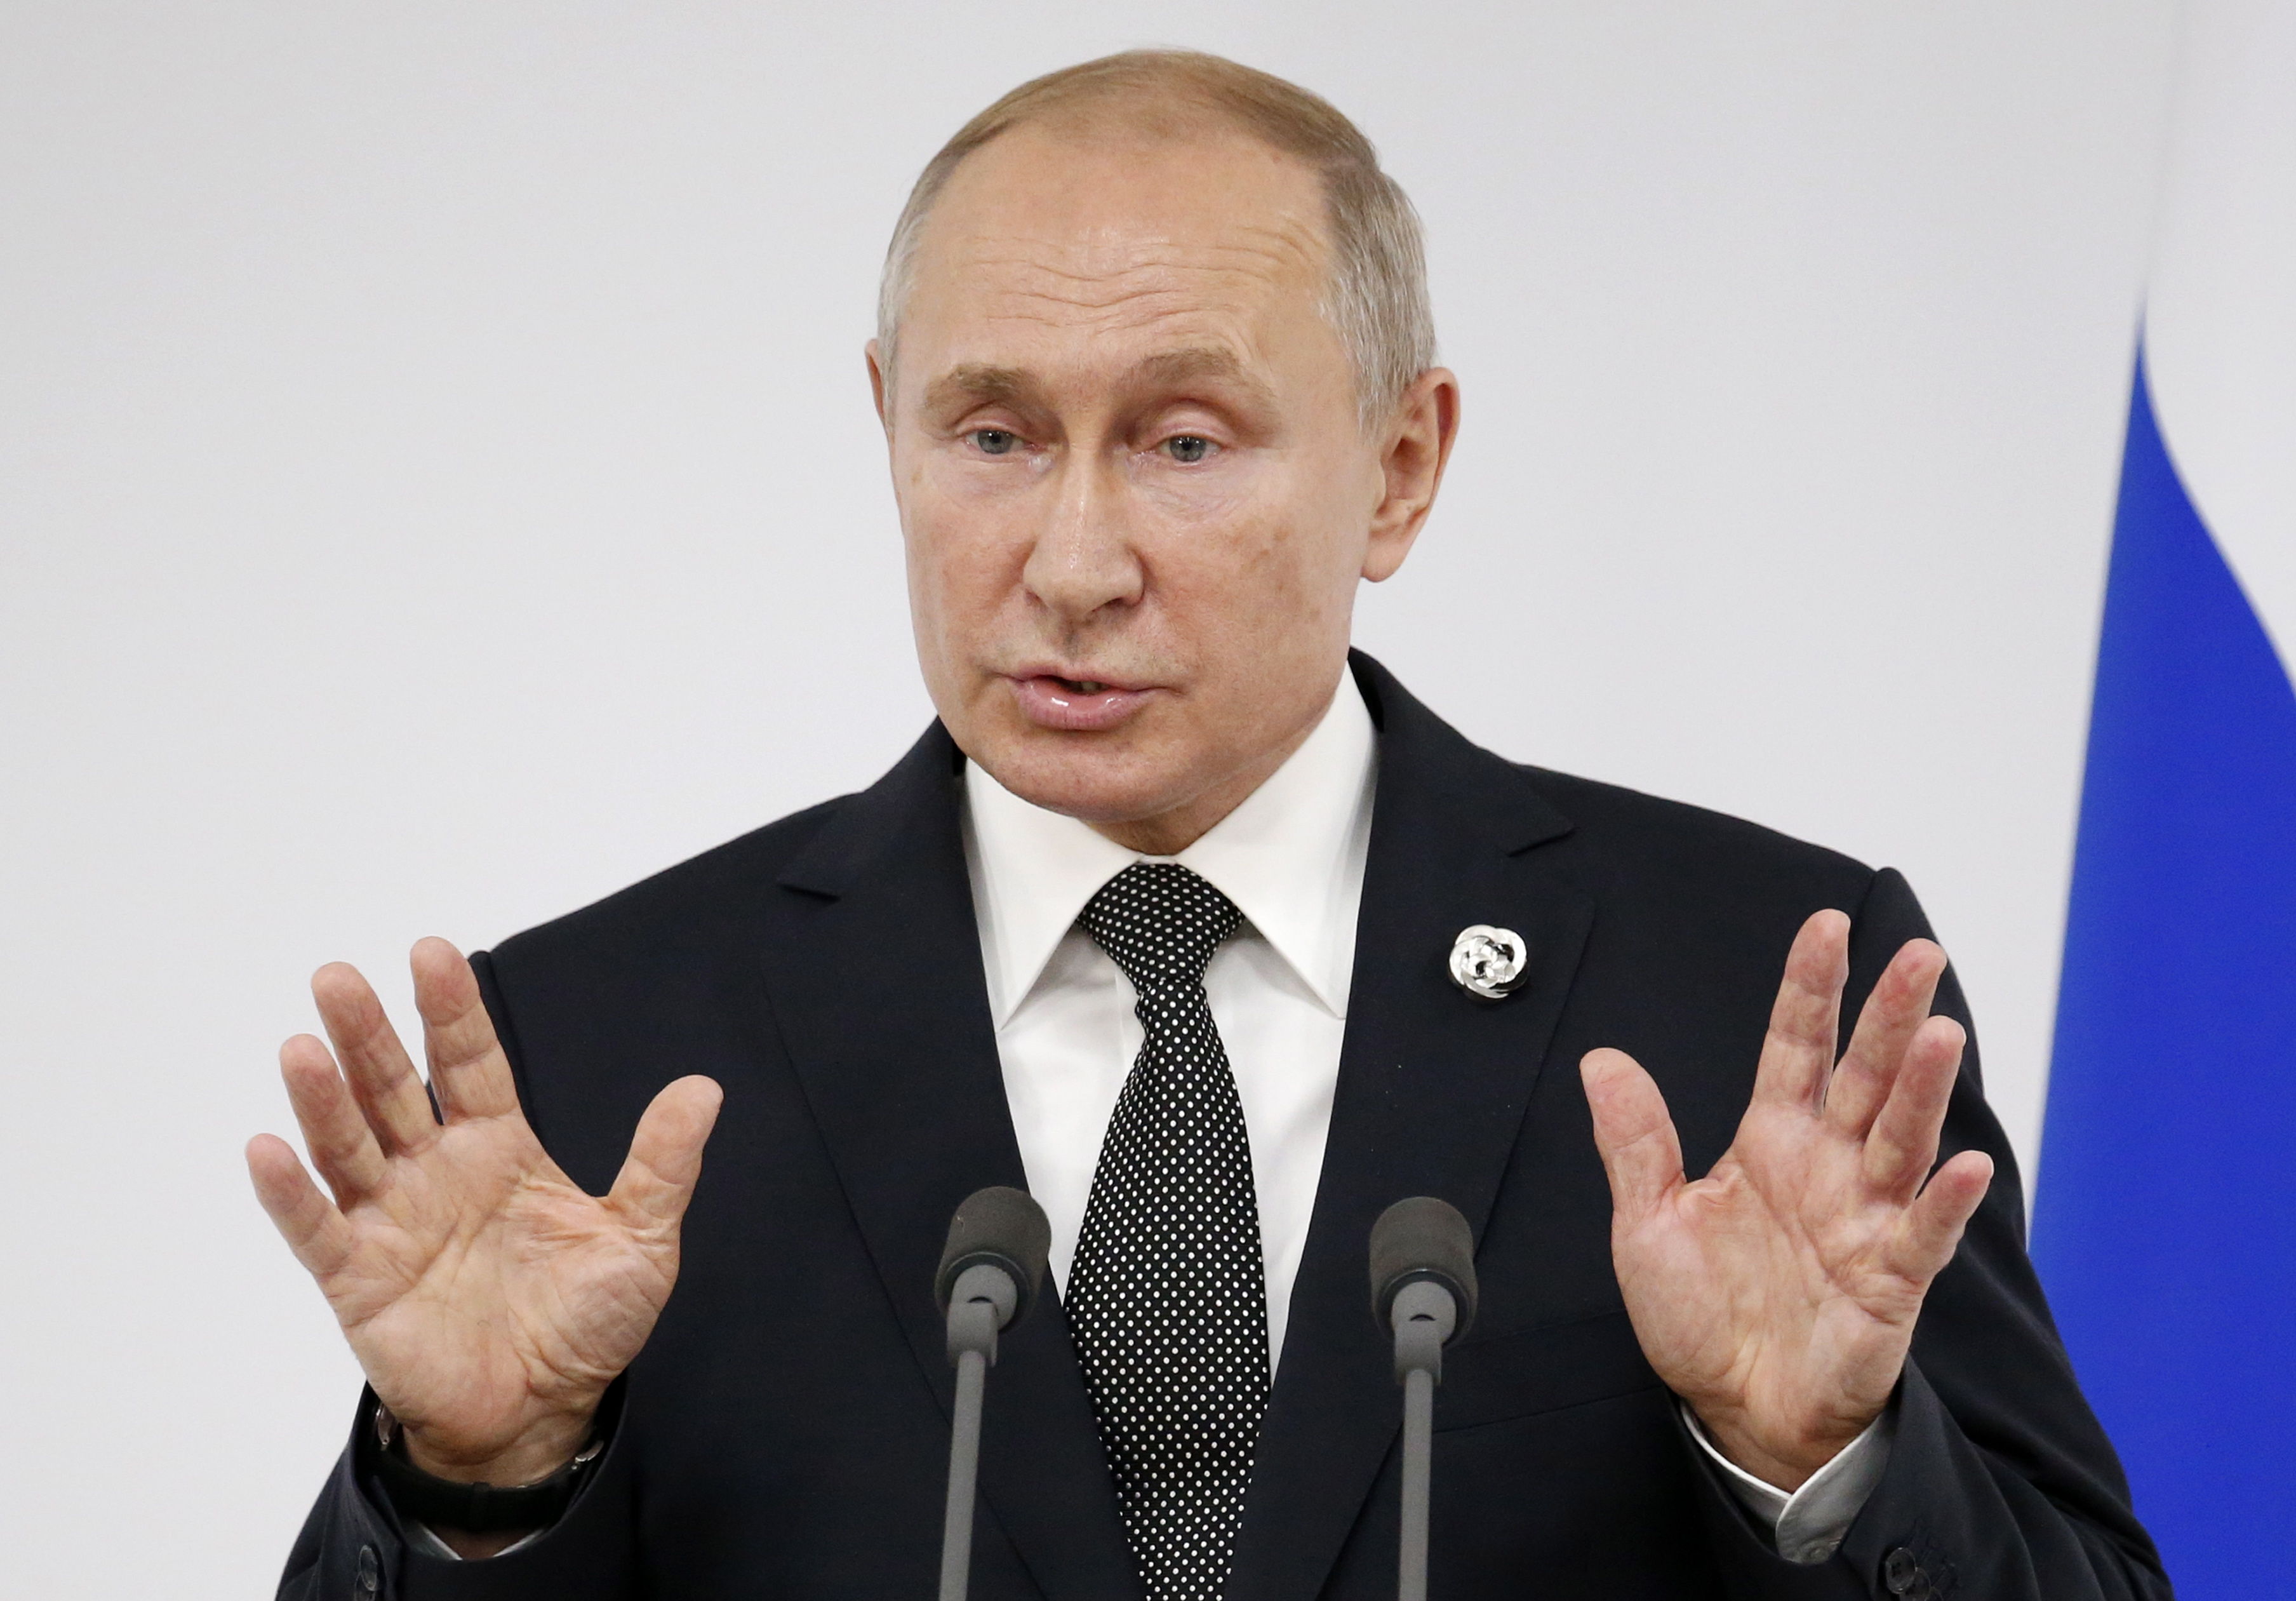 El presidente ruso Vladimir Putin se refirió al tema de la identidad de género durante su estadía en Japón, donde participó en el G20. (Foto Prensa Libre: EFE)